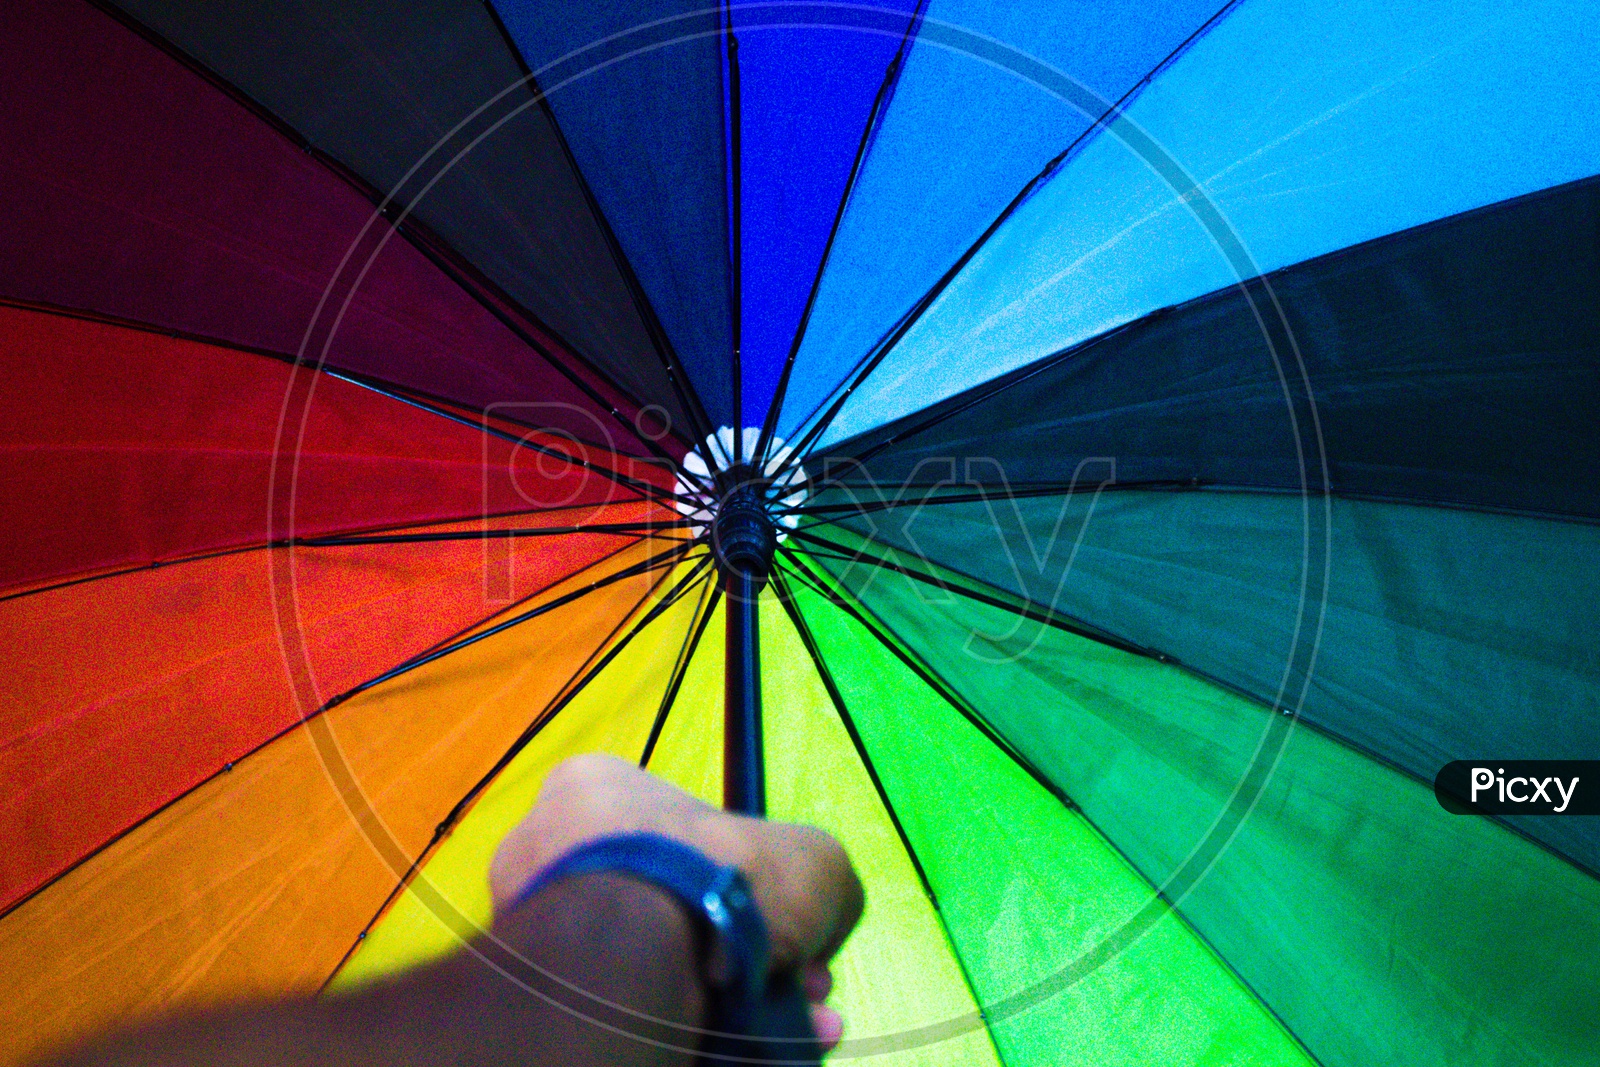 holding a colourful umbrella